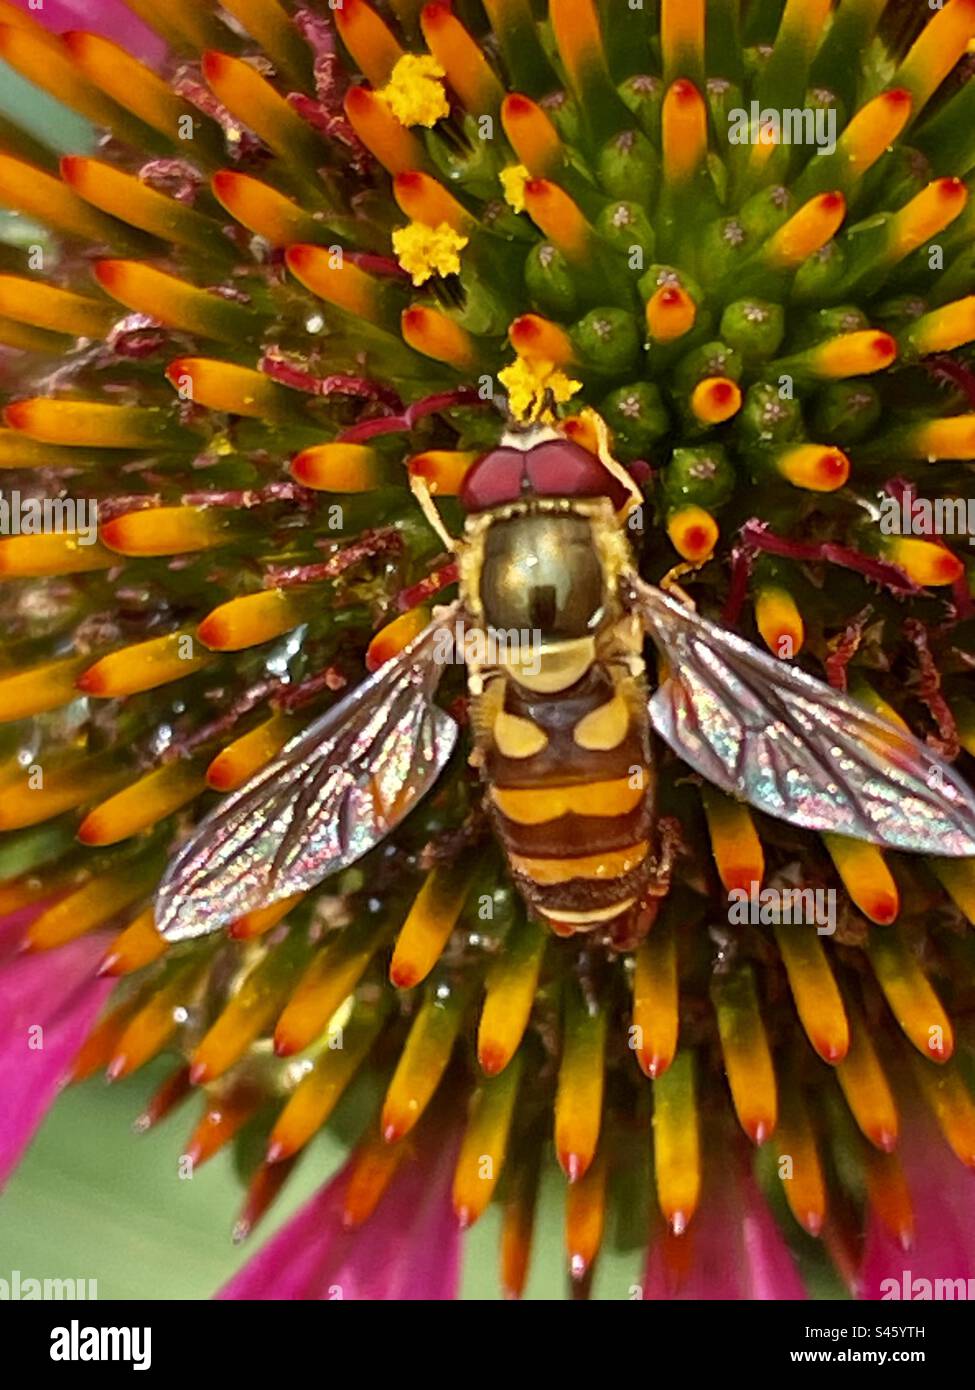 Un regard merveilleux sur le monde des insectes importants Banque D'Images